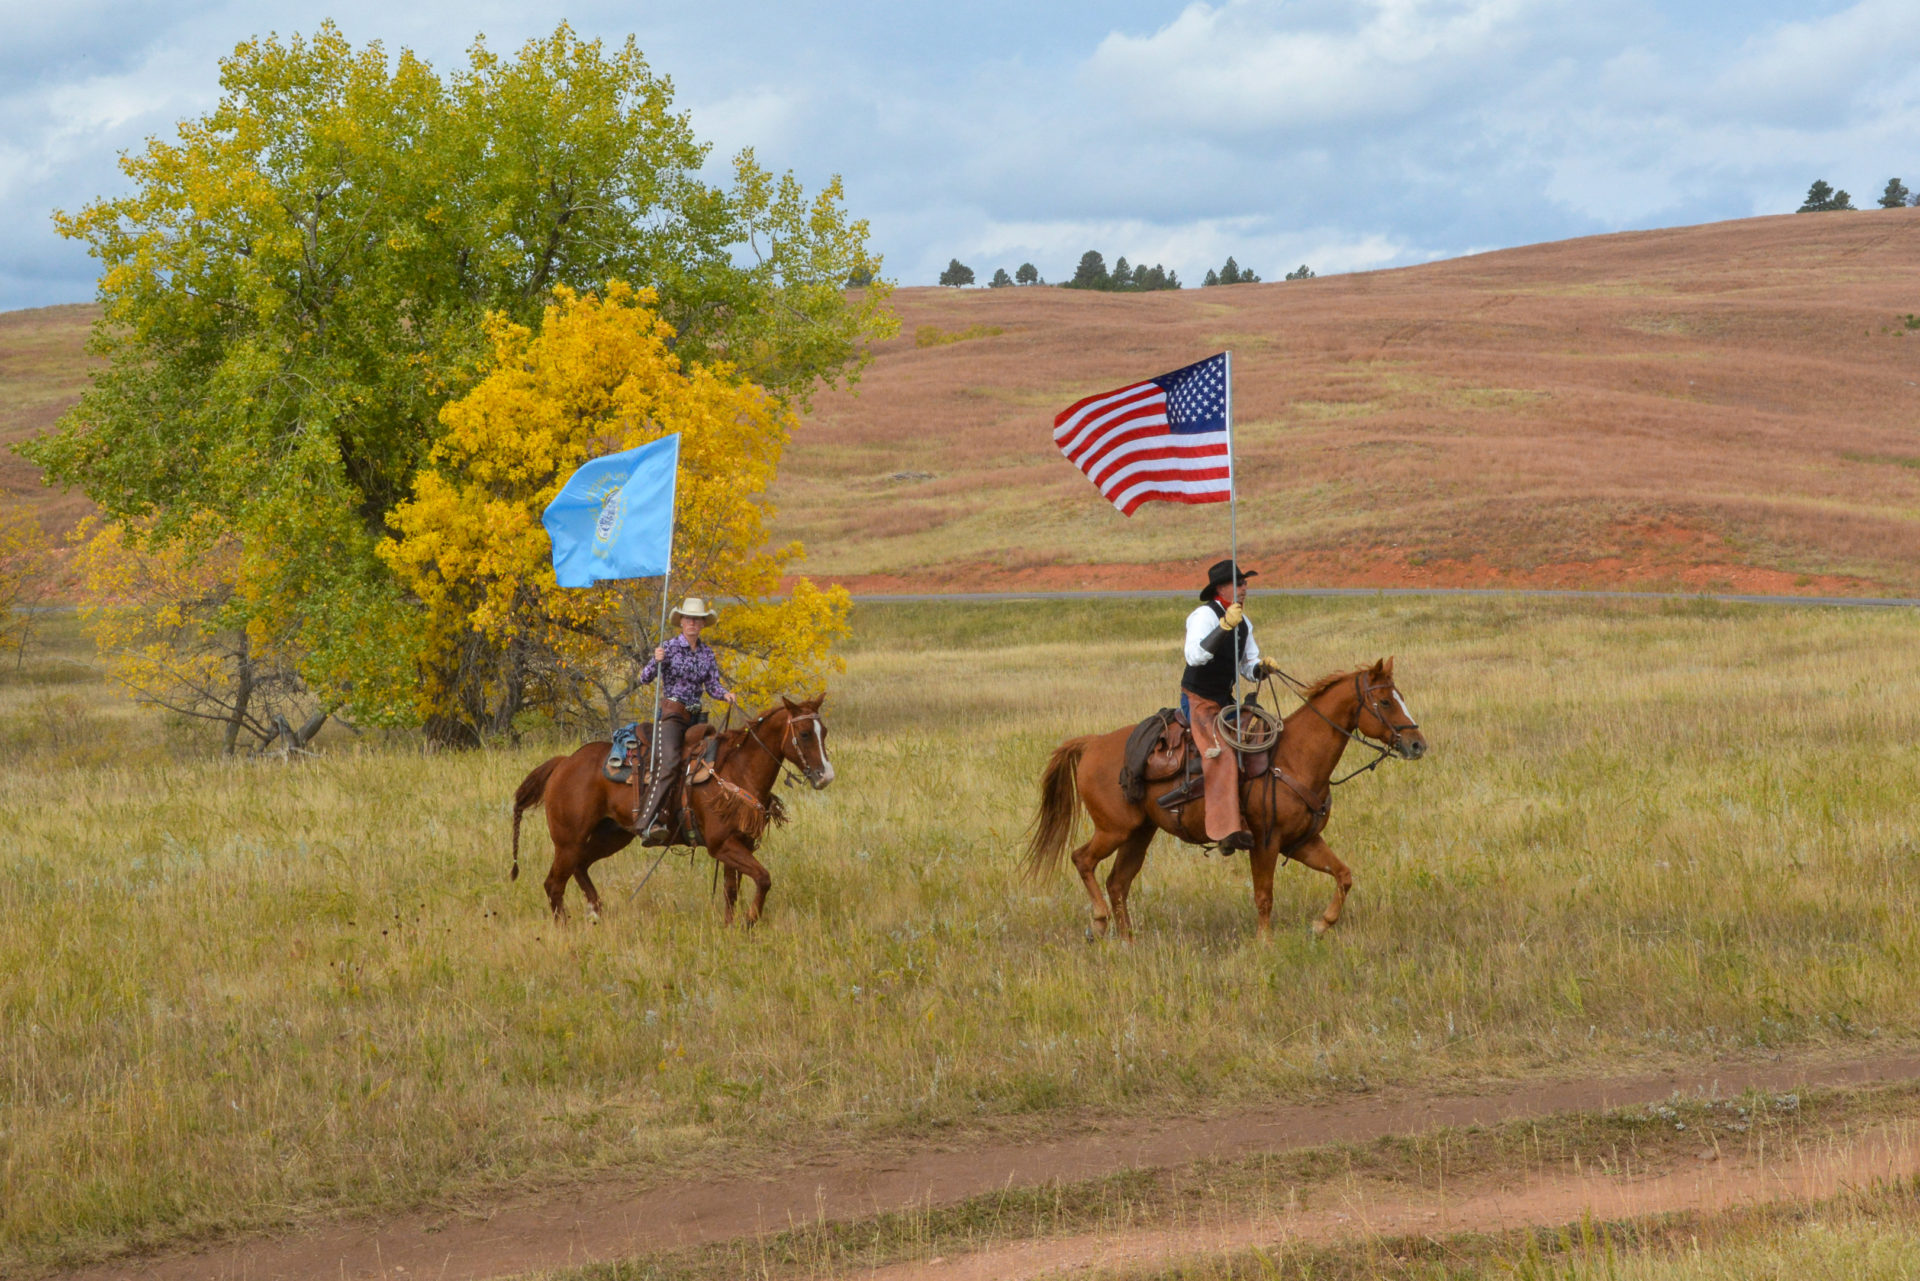 Reiter beim Buffalo Roundup in South Dakota mit Flaggen der USA und South Dakota